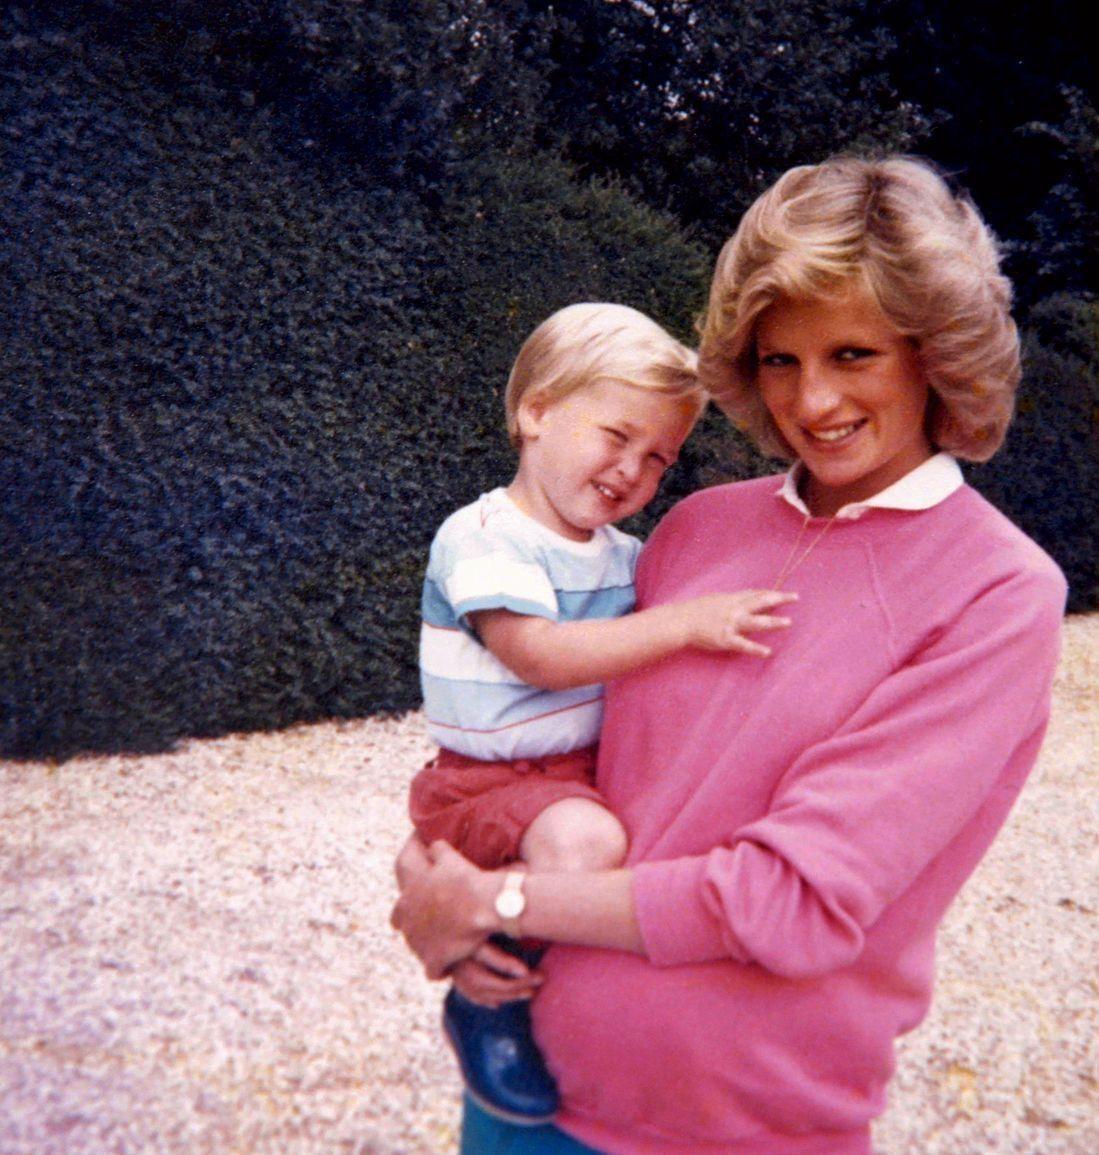 THINK PINK: Diana med rosa collegegenser og prins William på armen. Foto: Reuters